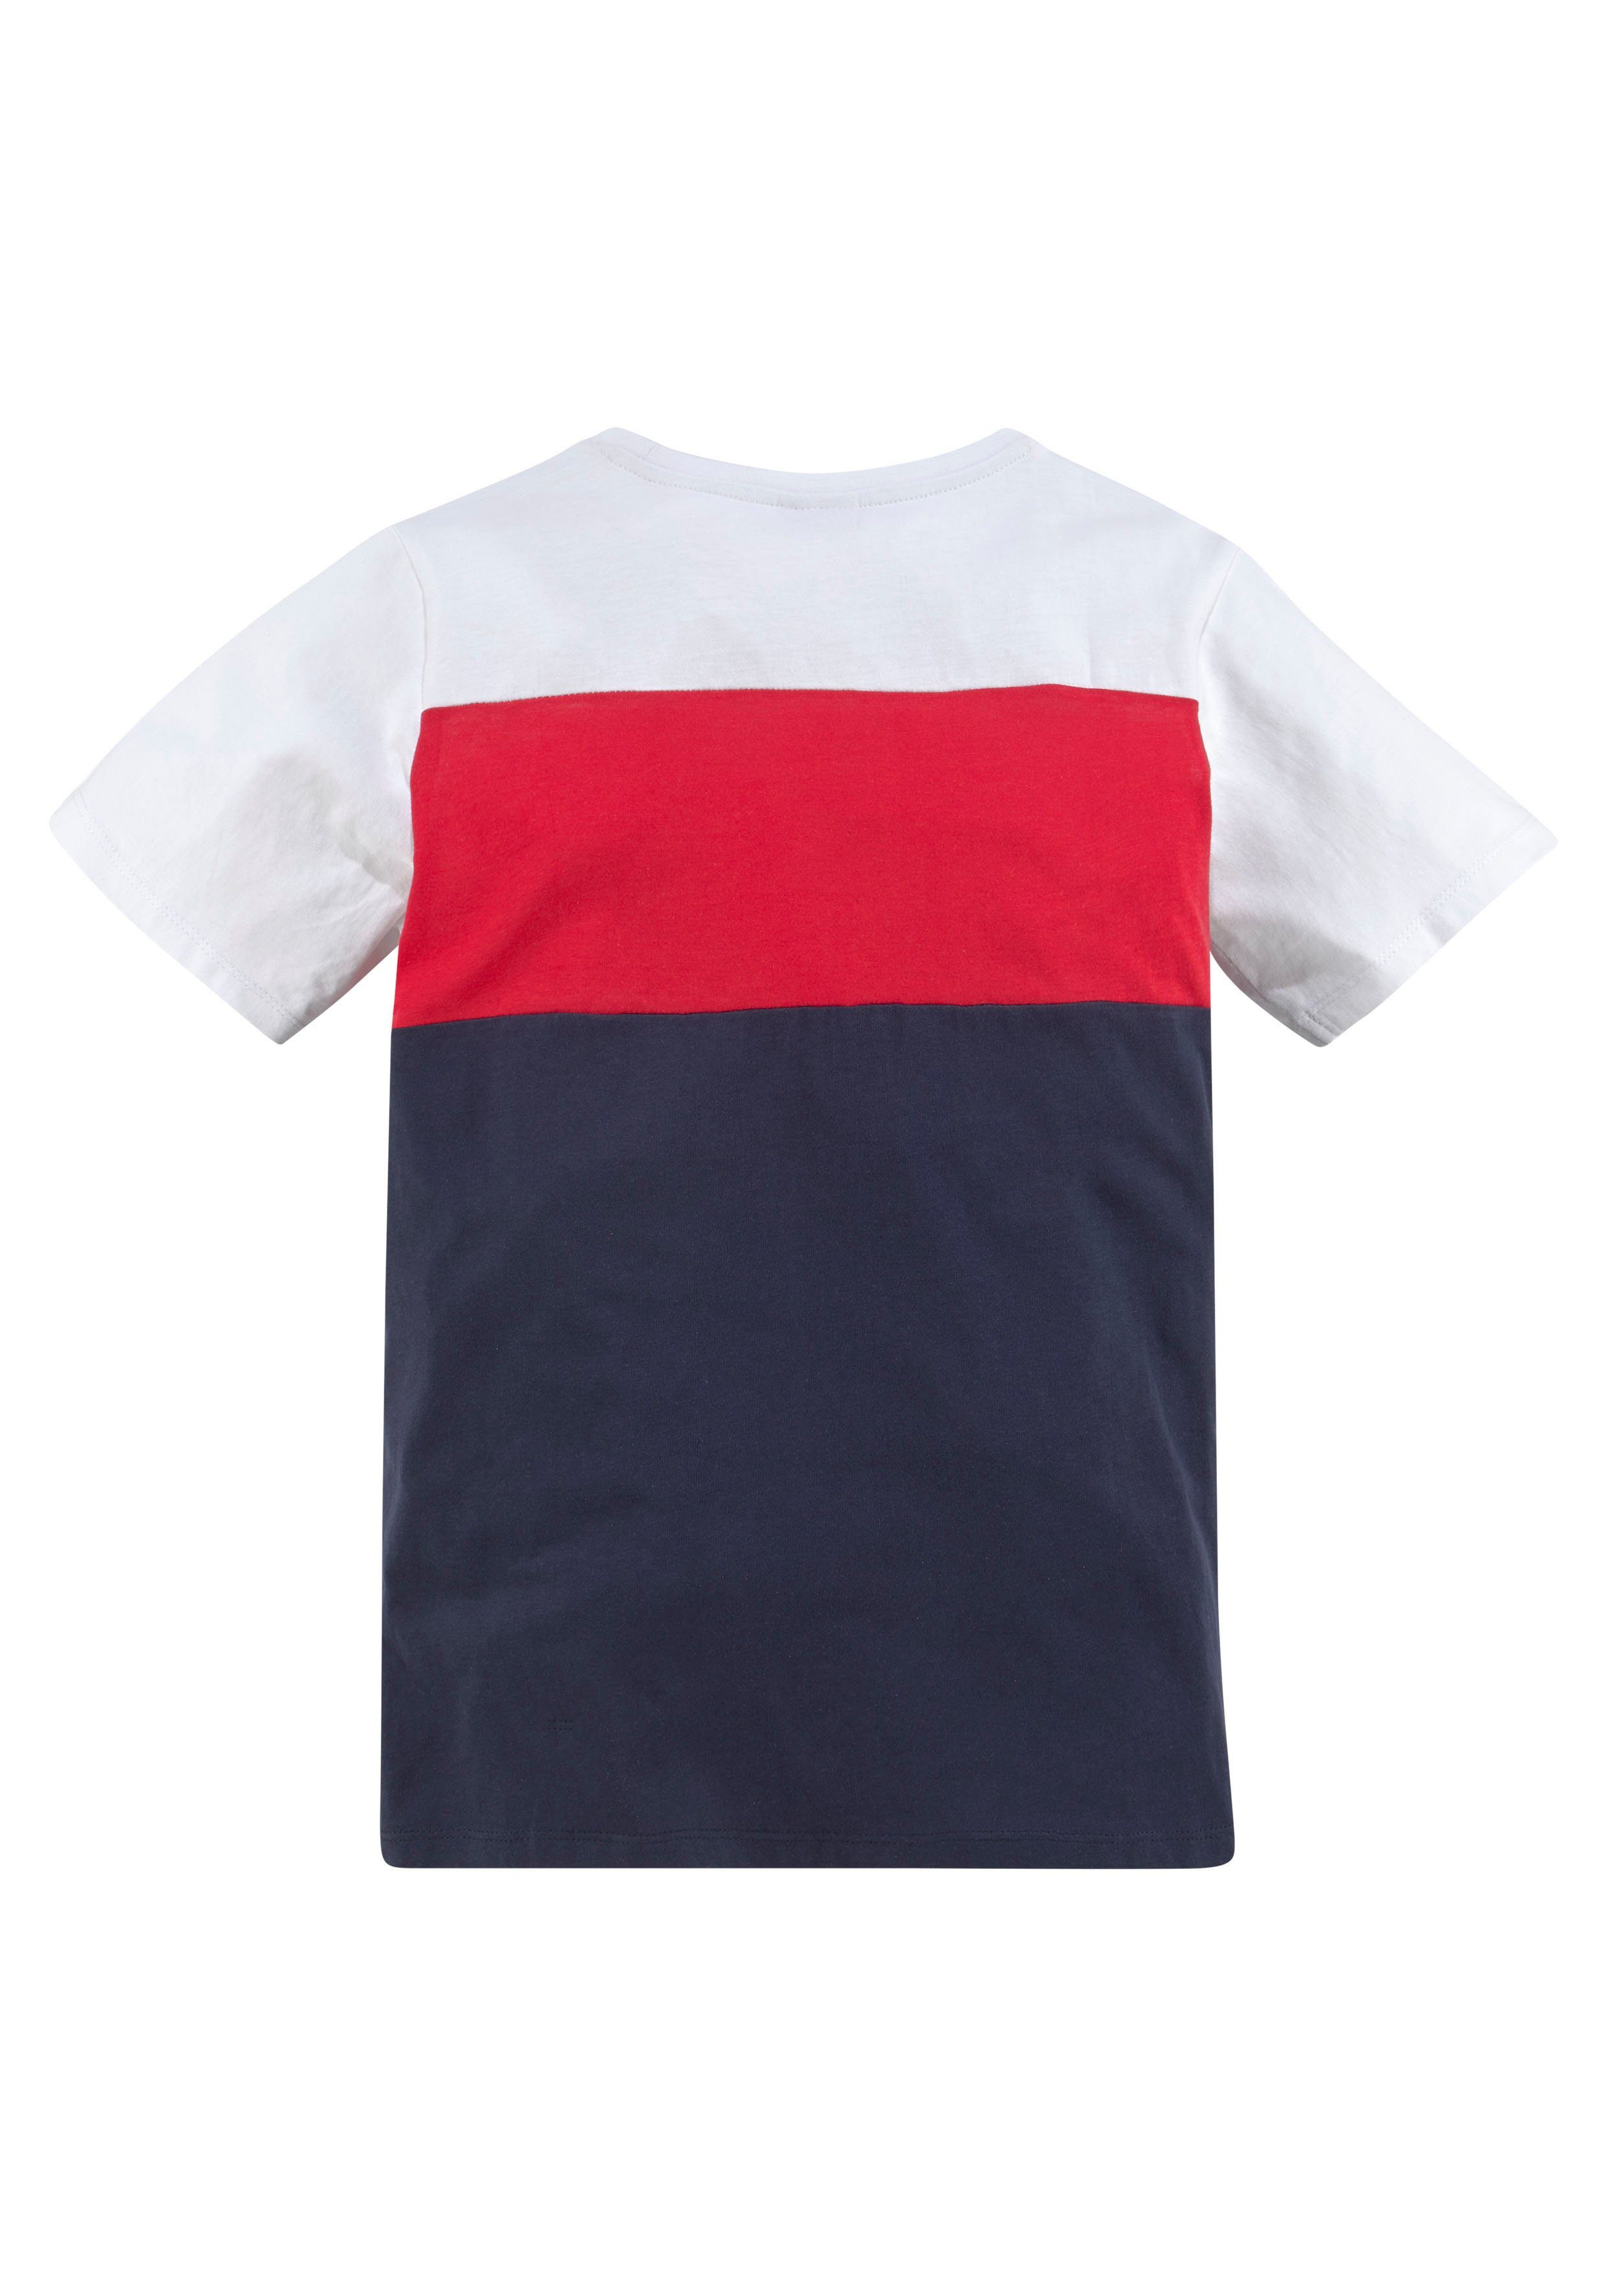 T-Shirt KangaROOS in Colorblockdesign